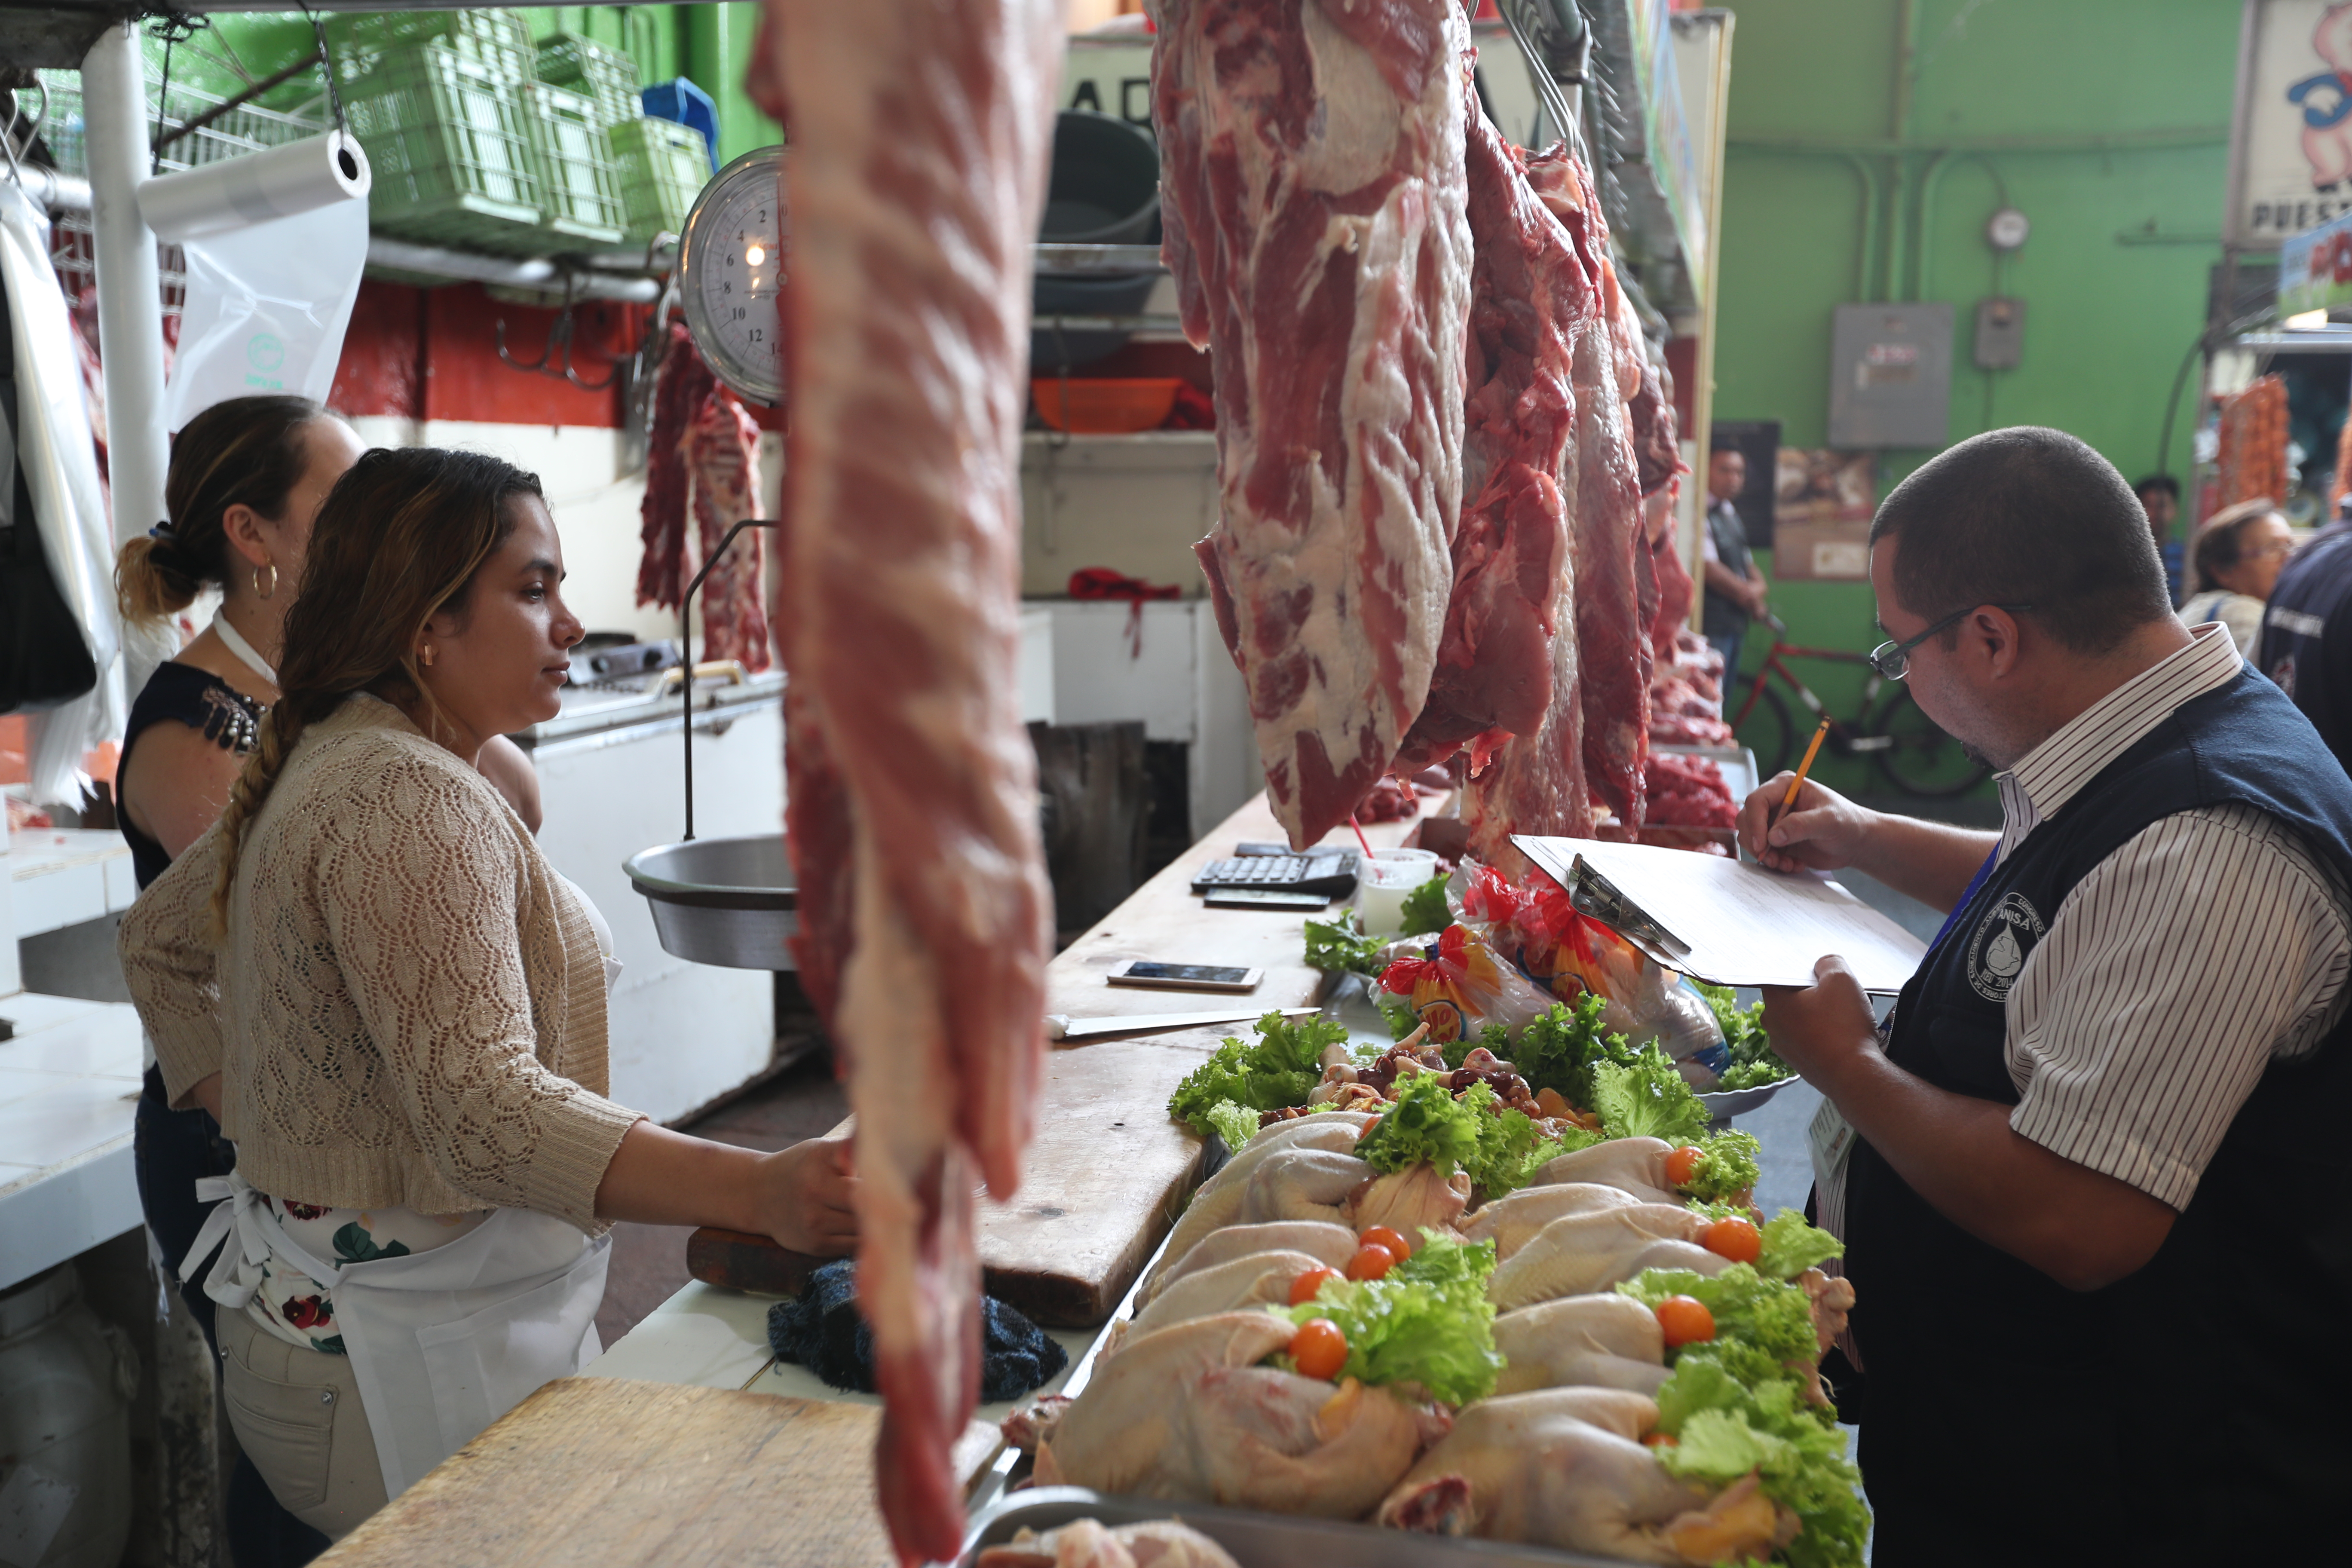 La Diaco determinó que en el mercado no existe comercialización de carne canina, luego de realizar las muestras de laboratorio. (Foto Prensa Libre: Hemeroteca)